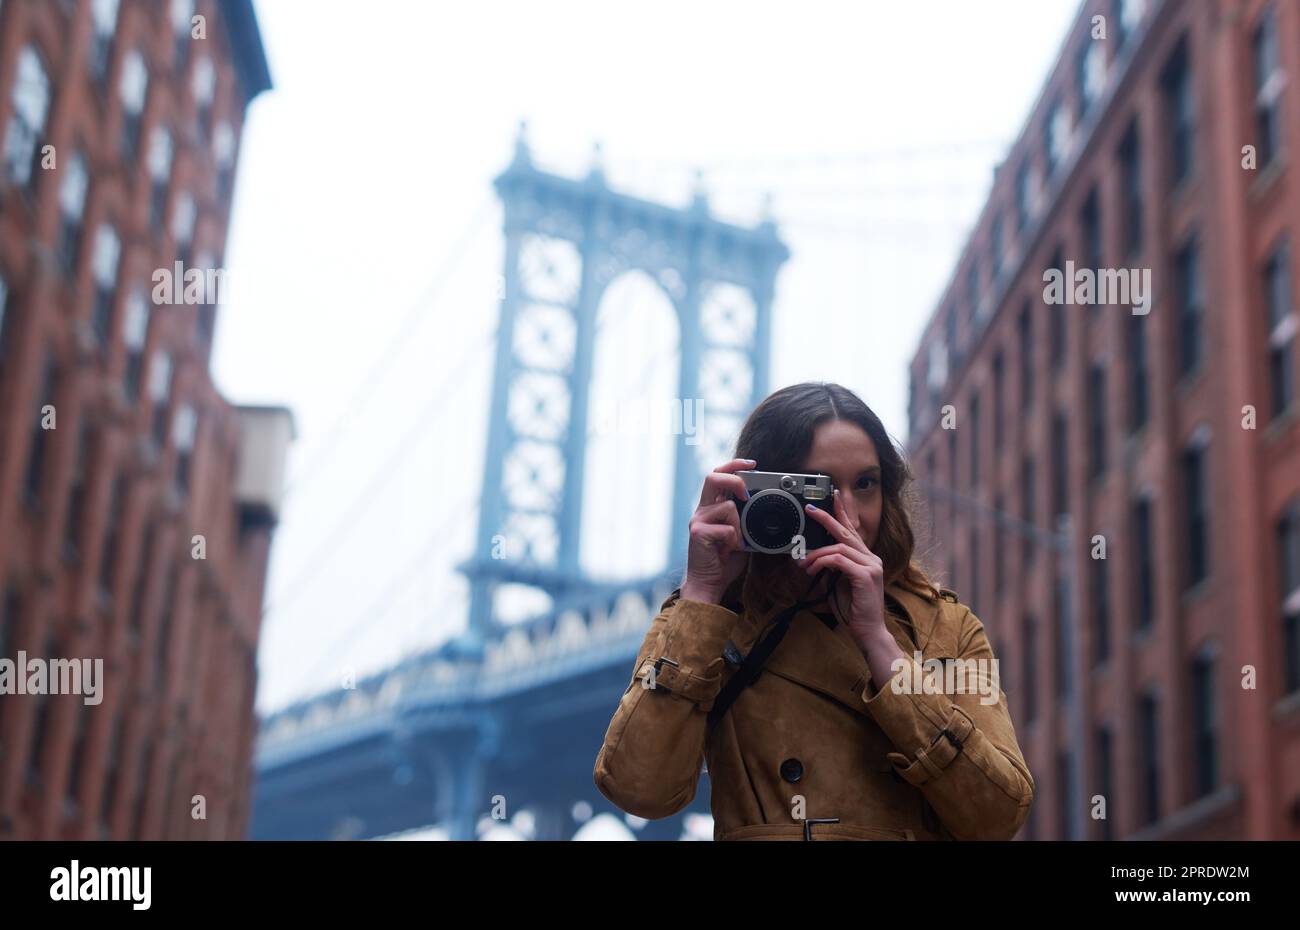 Non perdere una sola memoria. Ritratto di una giovane donna attraente che scatta foto con una fotocamera in città. Foto Stock